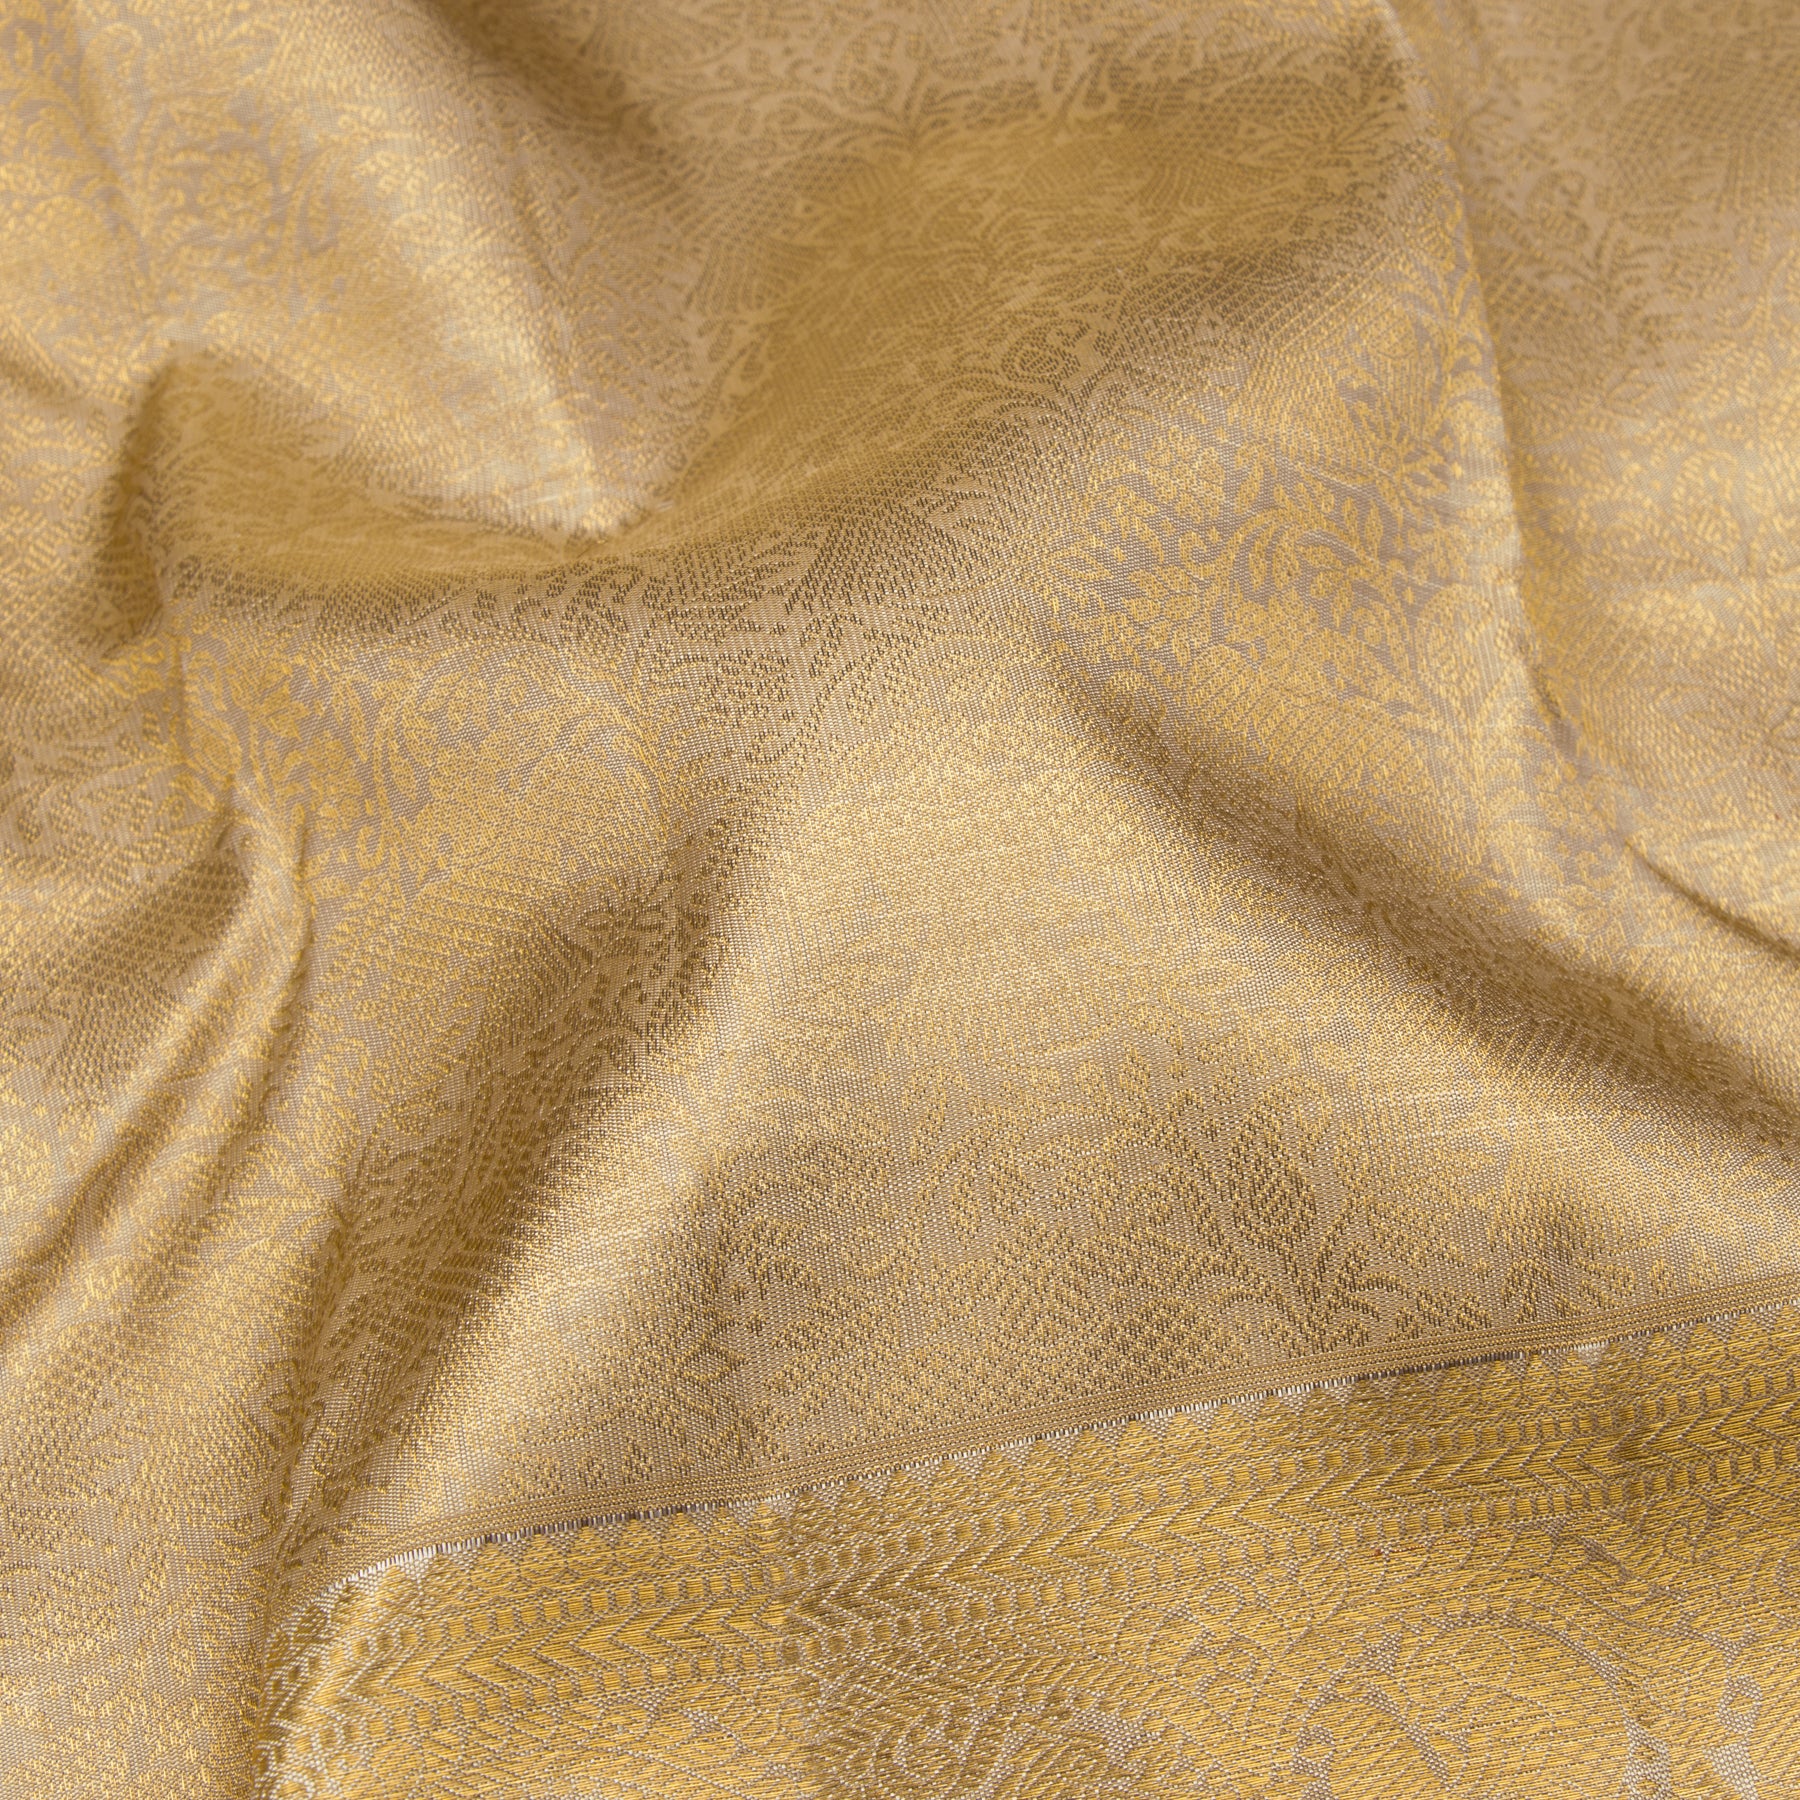 Kanakavalli Kanjivaram Silk Sari 23-110-HS001-09966 - Fabric View